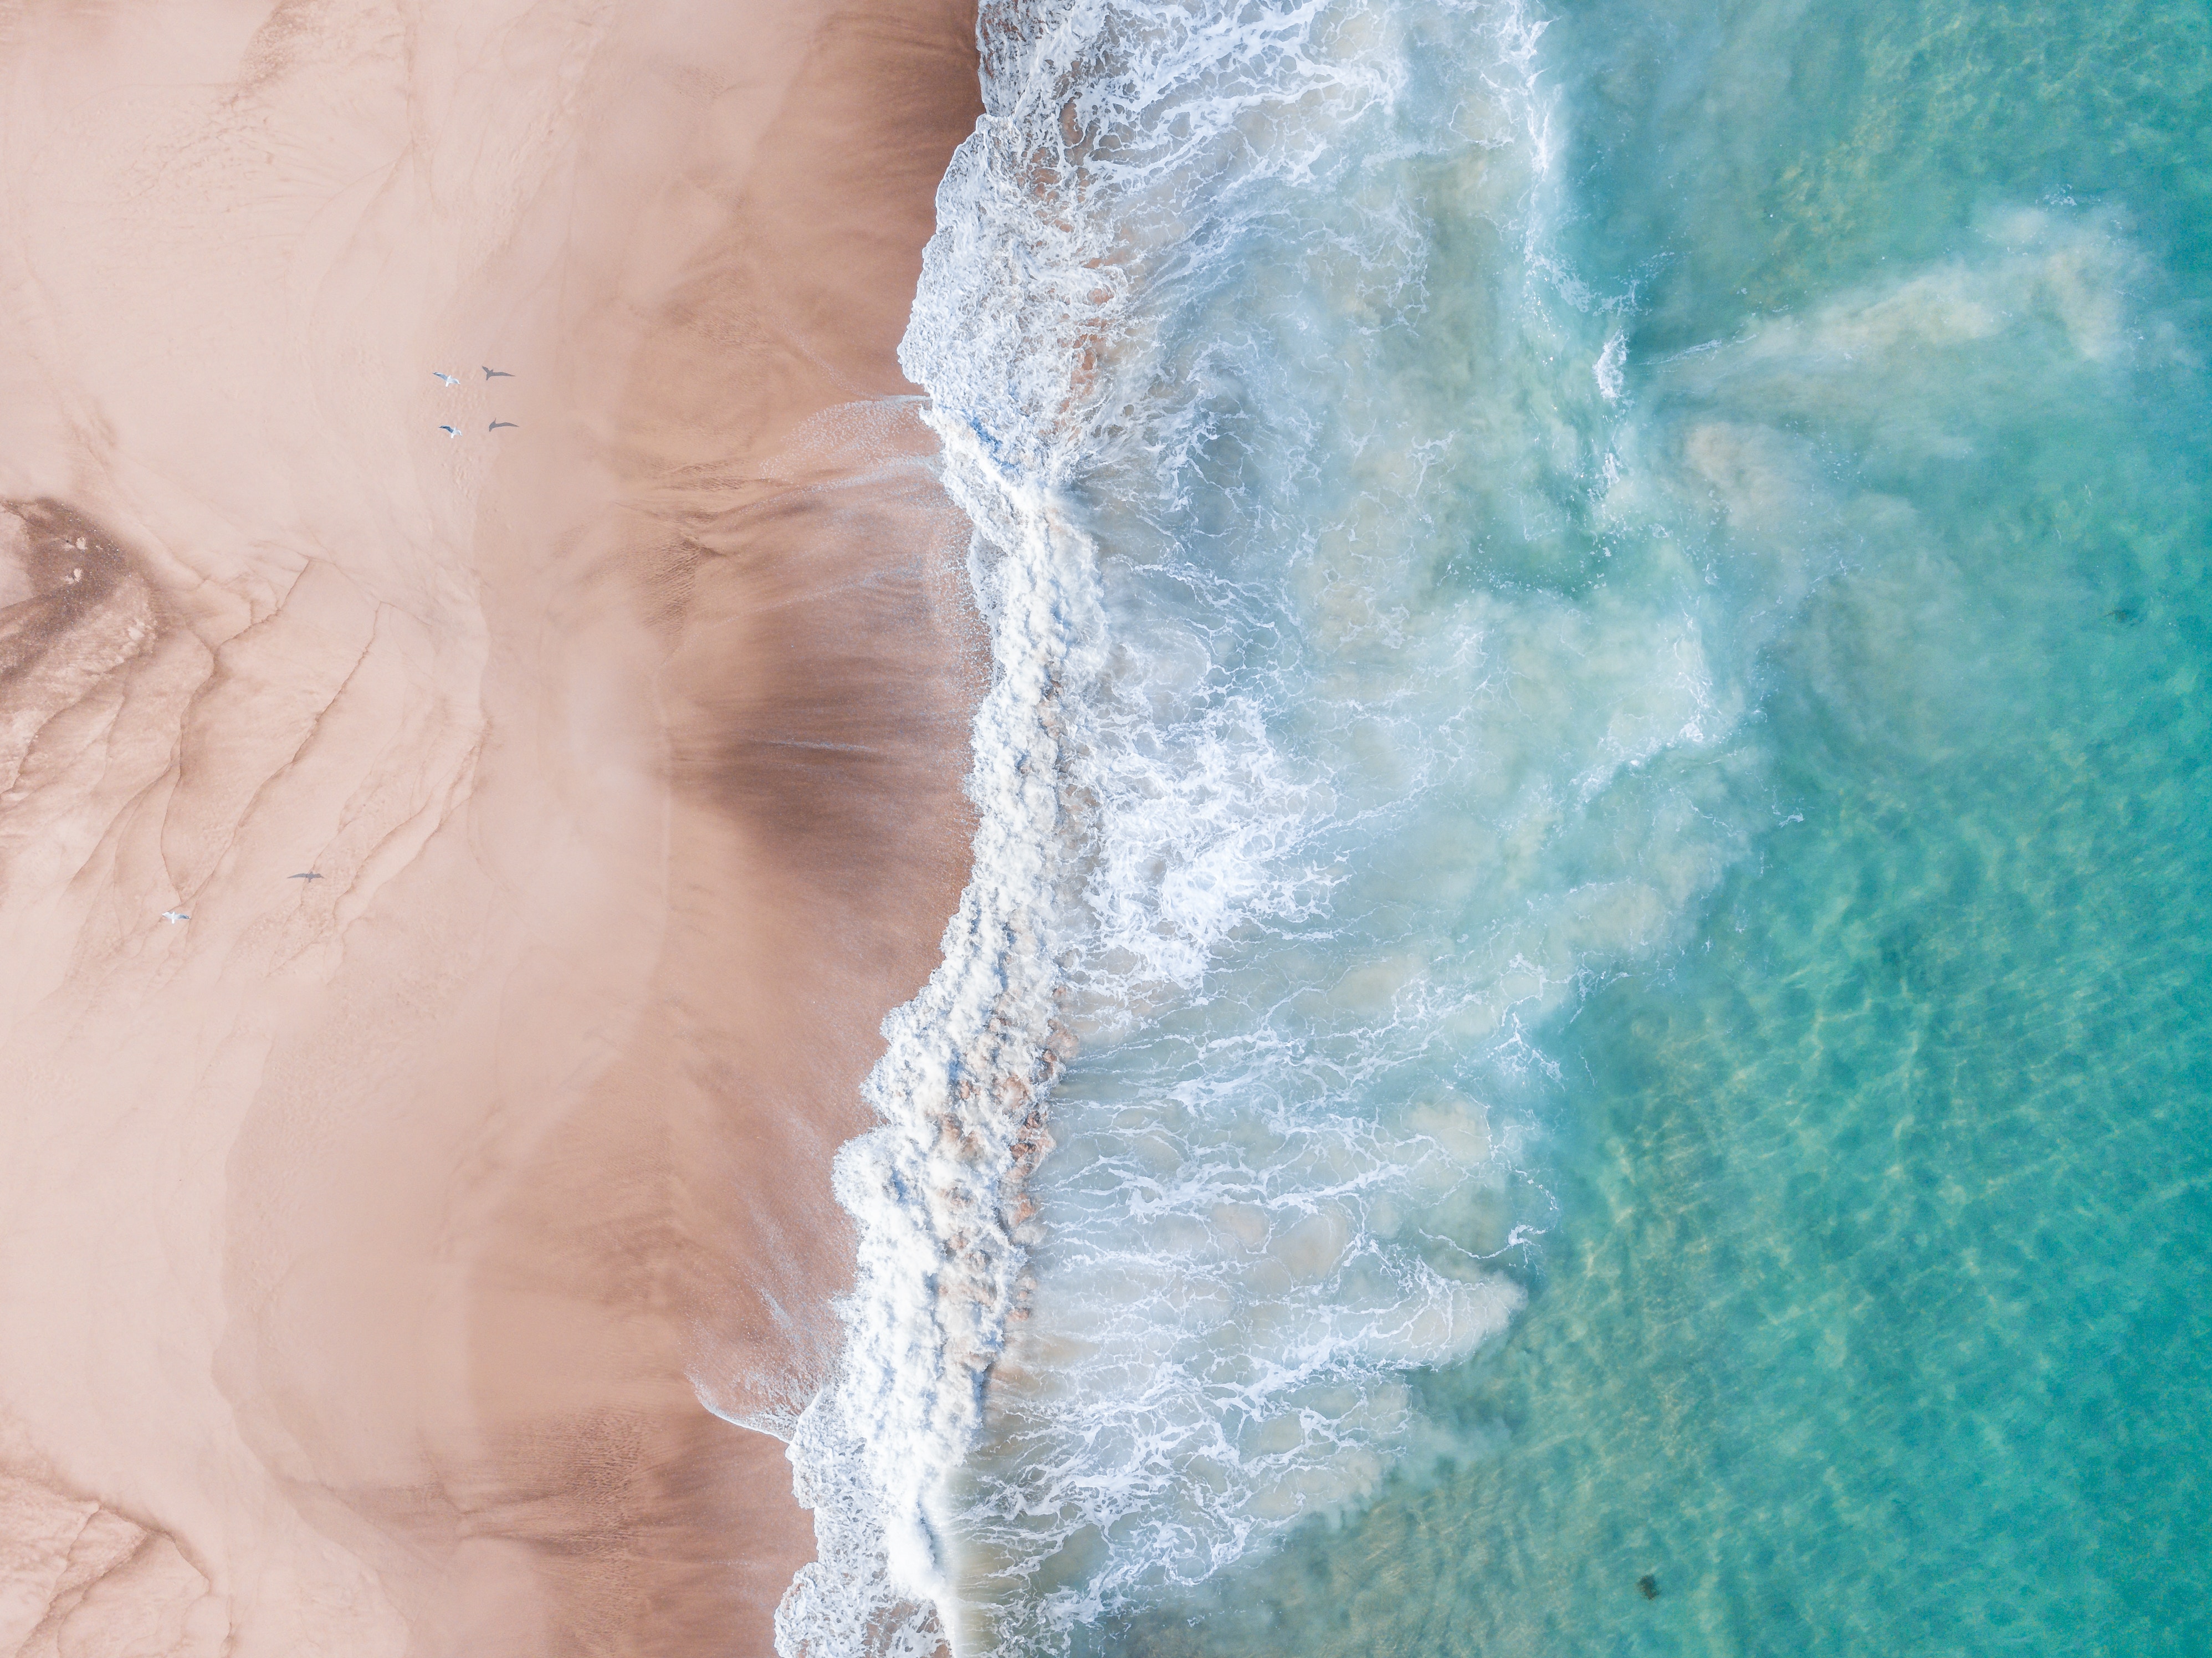 3992x2992 #wallpaper, #drone view, #shore, #clear water, #wafe, #summer bieach, #summer, #sandy beach, #beach, #sea, #aerial view, #ocean, # beach drone, #PNG image, #dji mavic, #drone view beach, #tide, #wave, #sand, #tropical, #